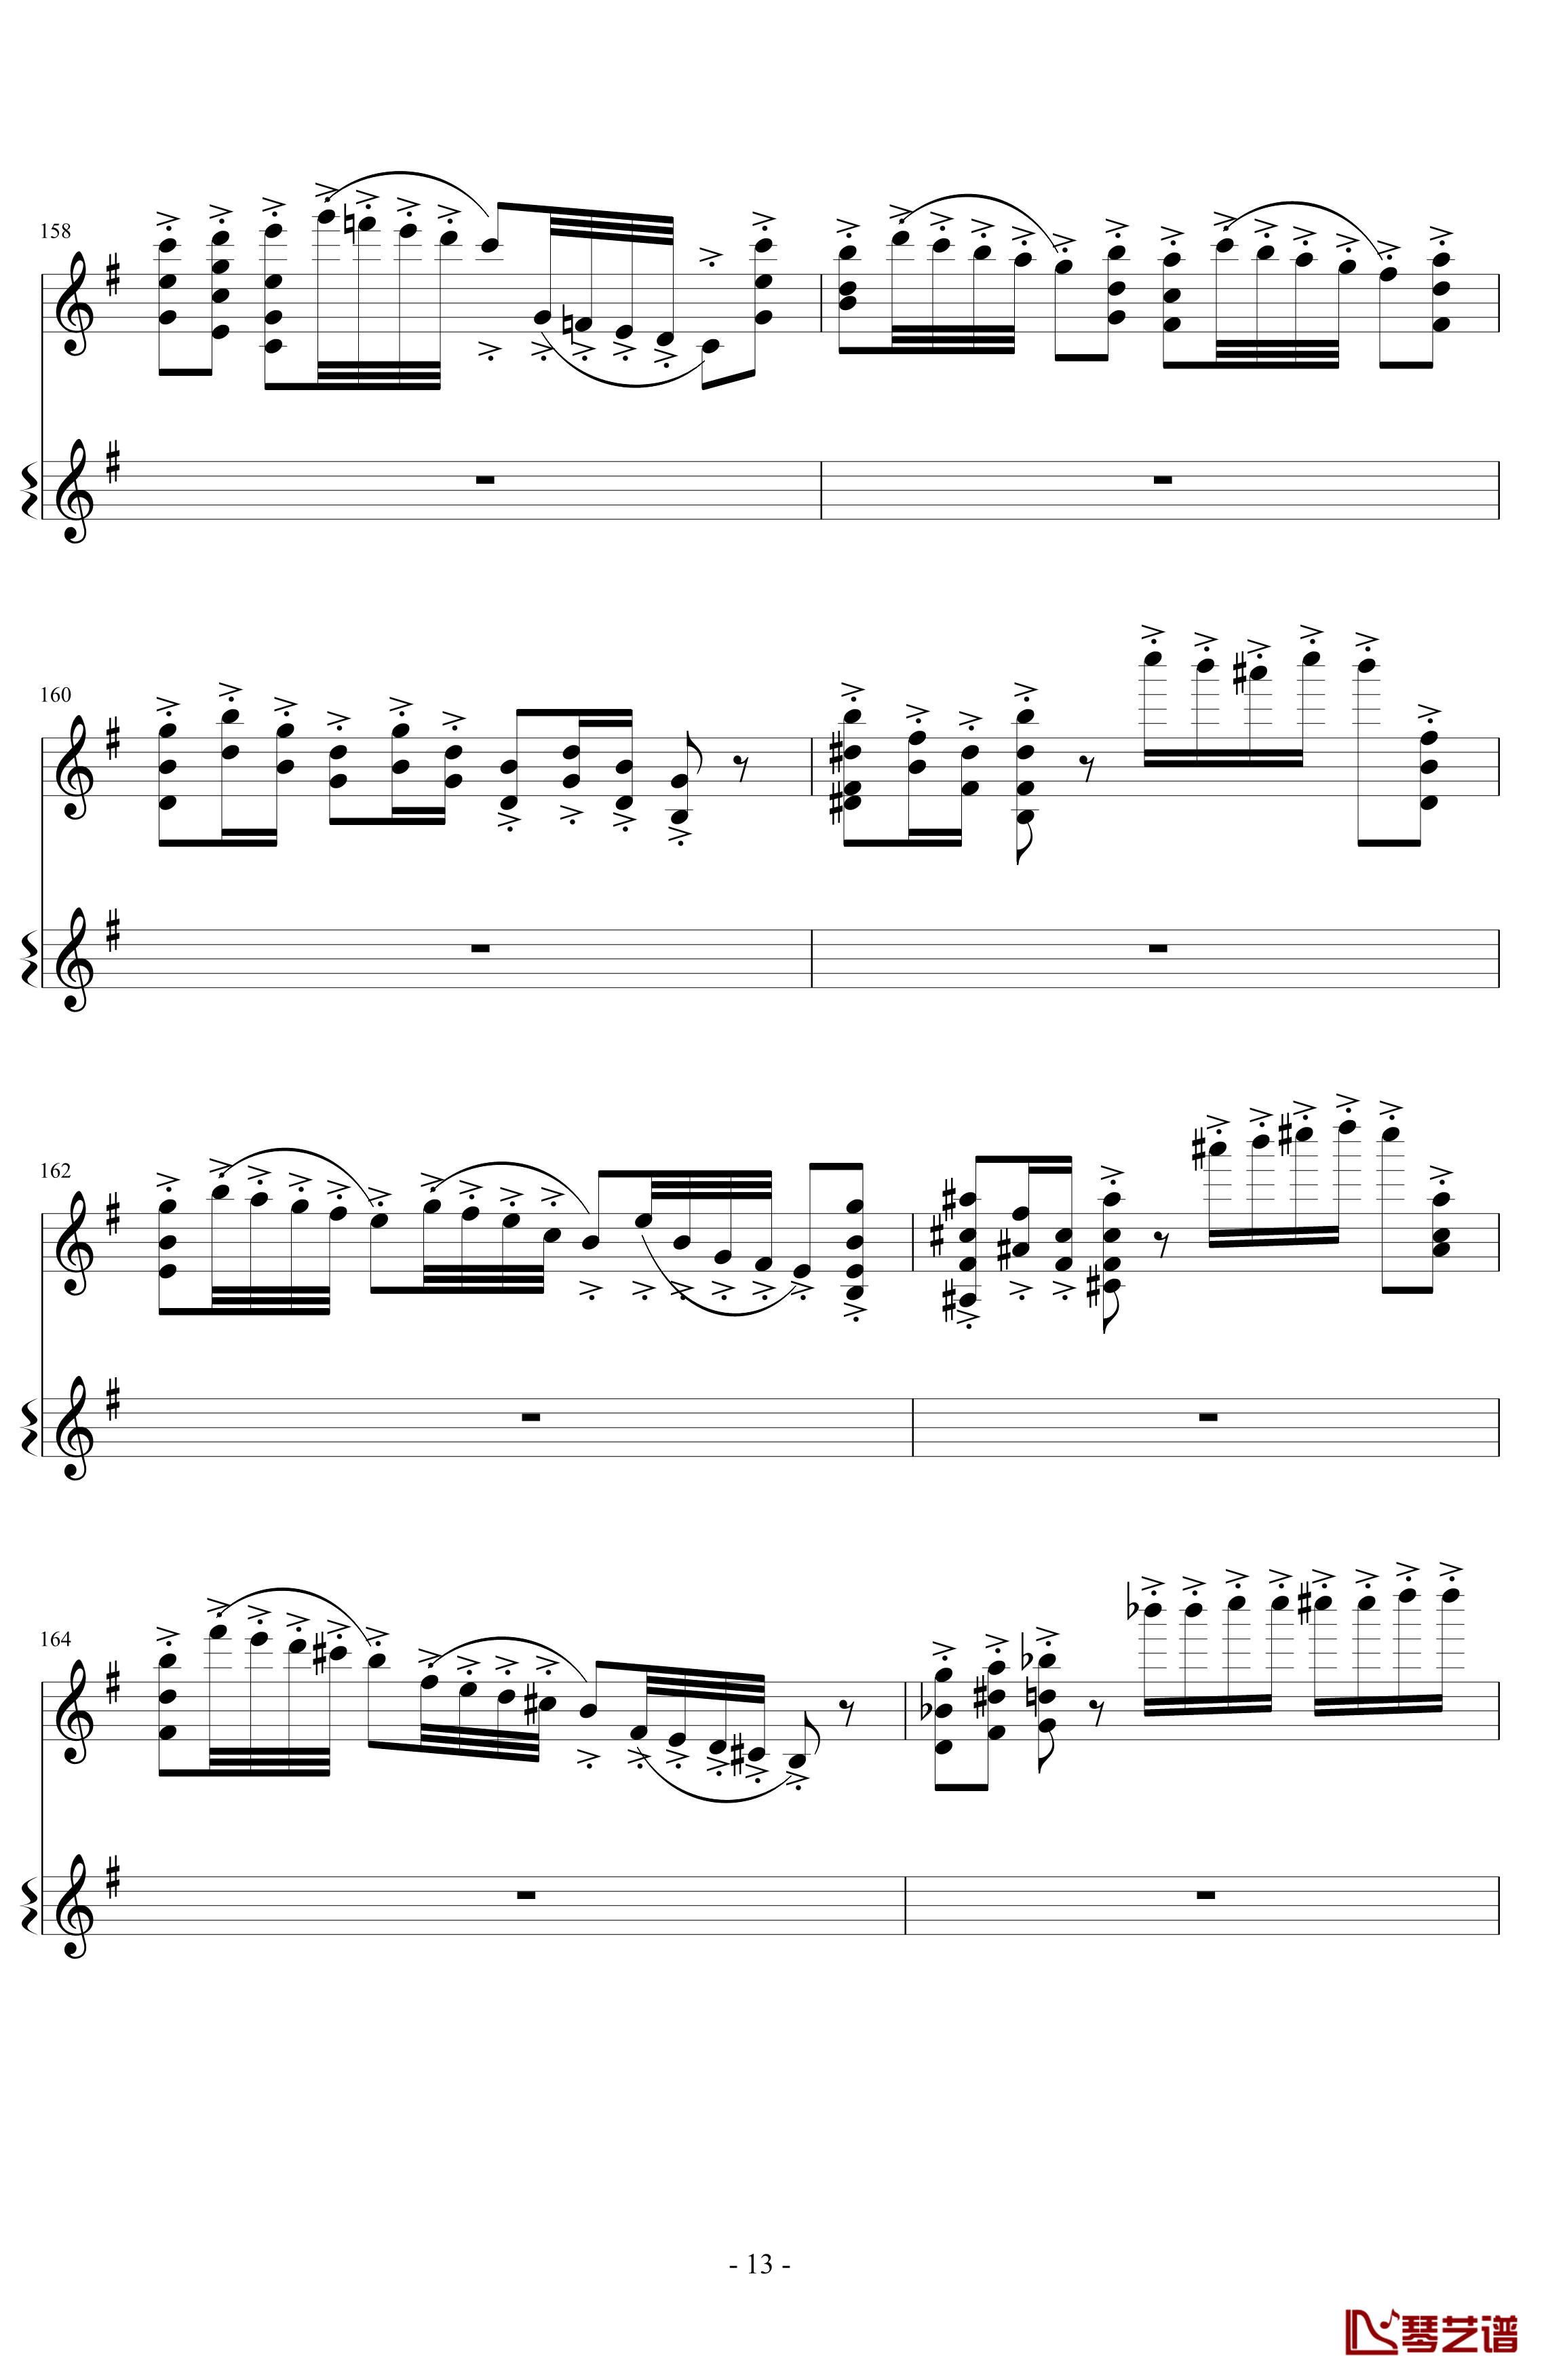 意大利国歌变奏曲钢琴谱-DXF13